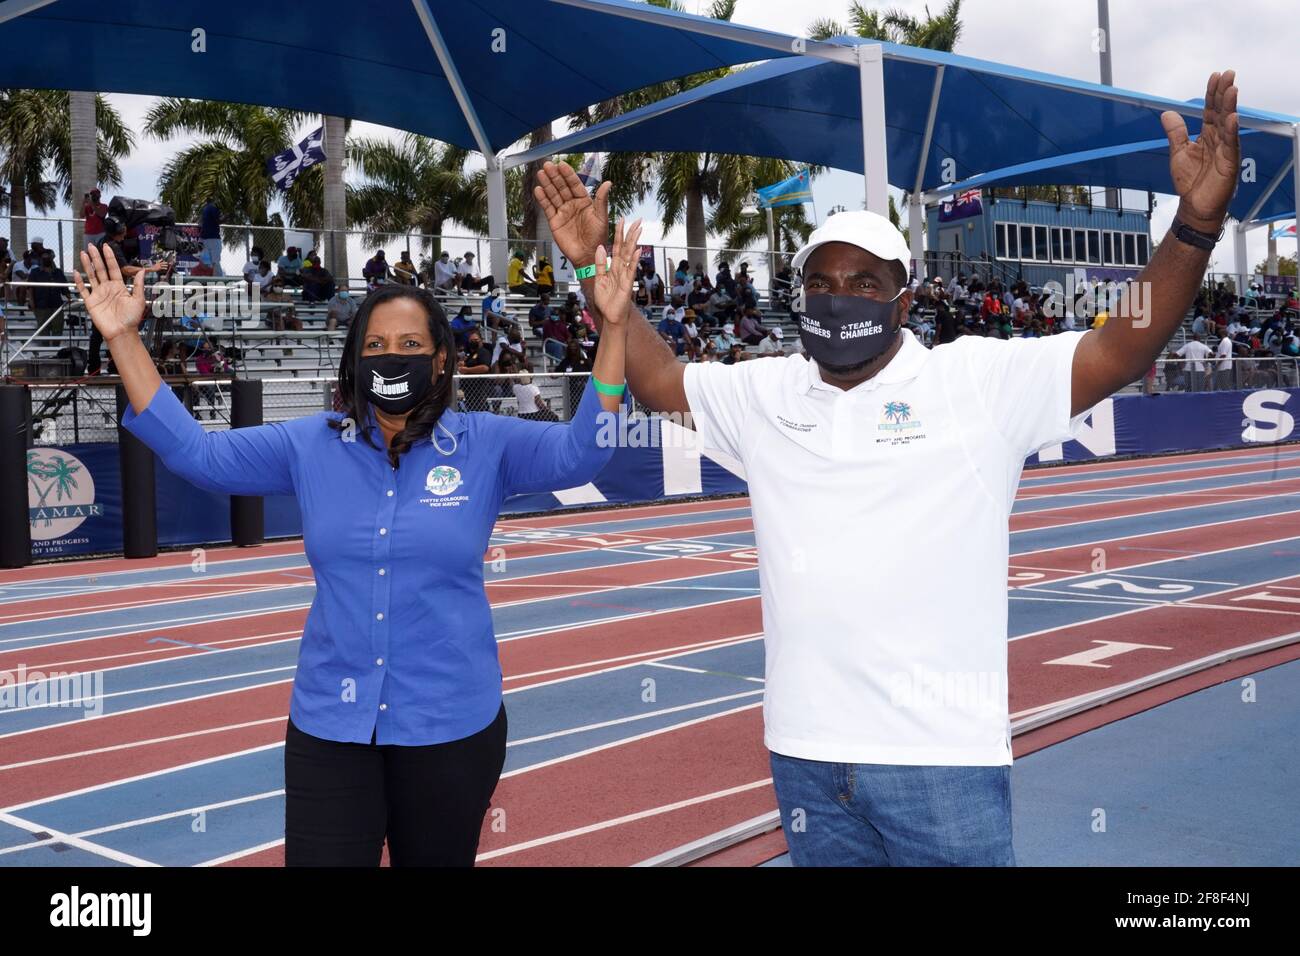 Die Vizebürgermeisterin der Stadt Miramar Yvette Colbourne (links) und der kommissar Maxwell Chambers posieren mit Gesichtsmasken während der Miramar-Einladung am Samstag, Stockfoto